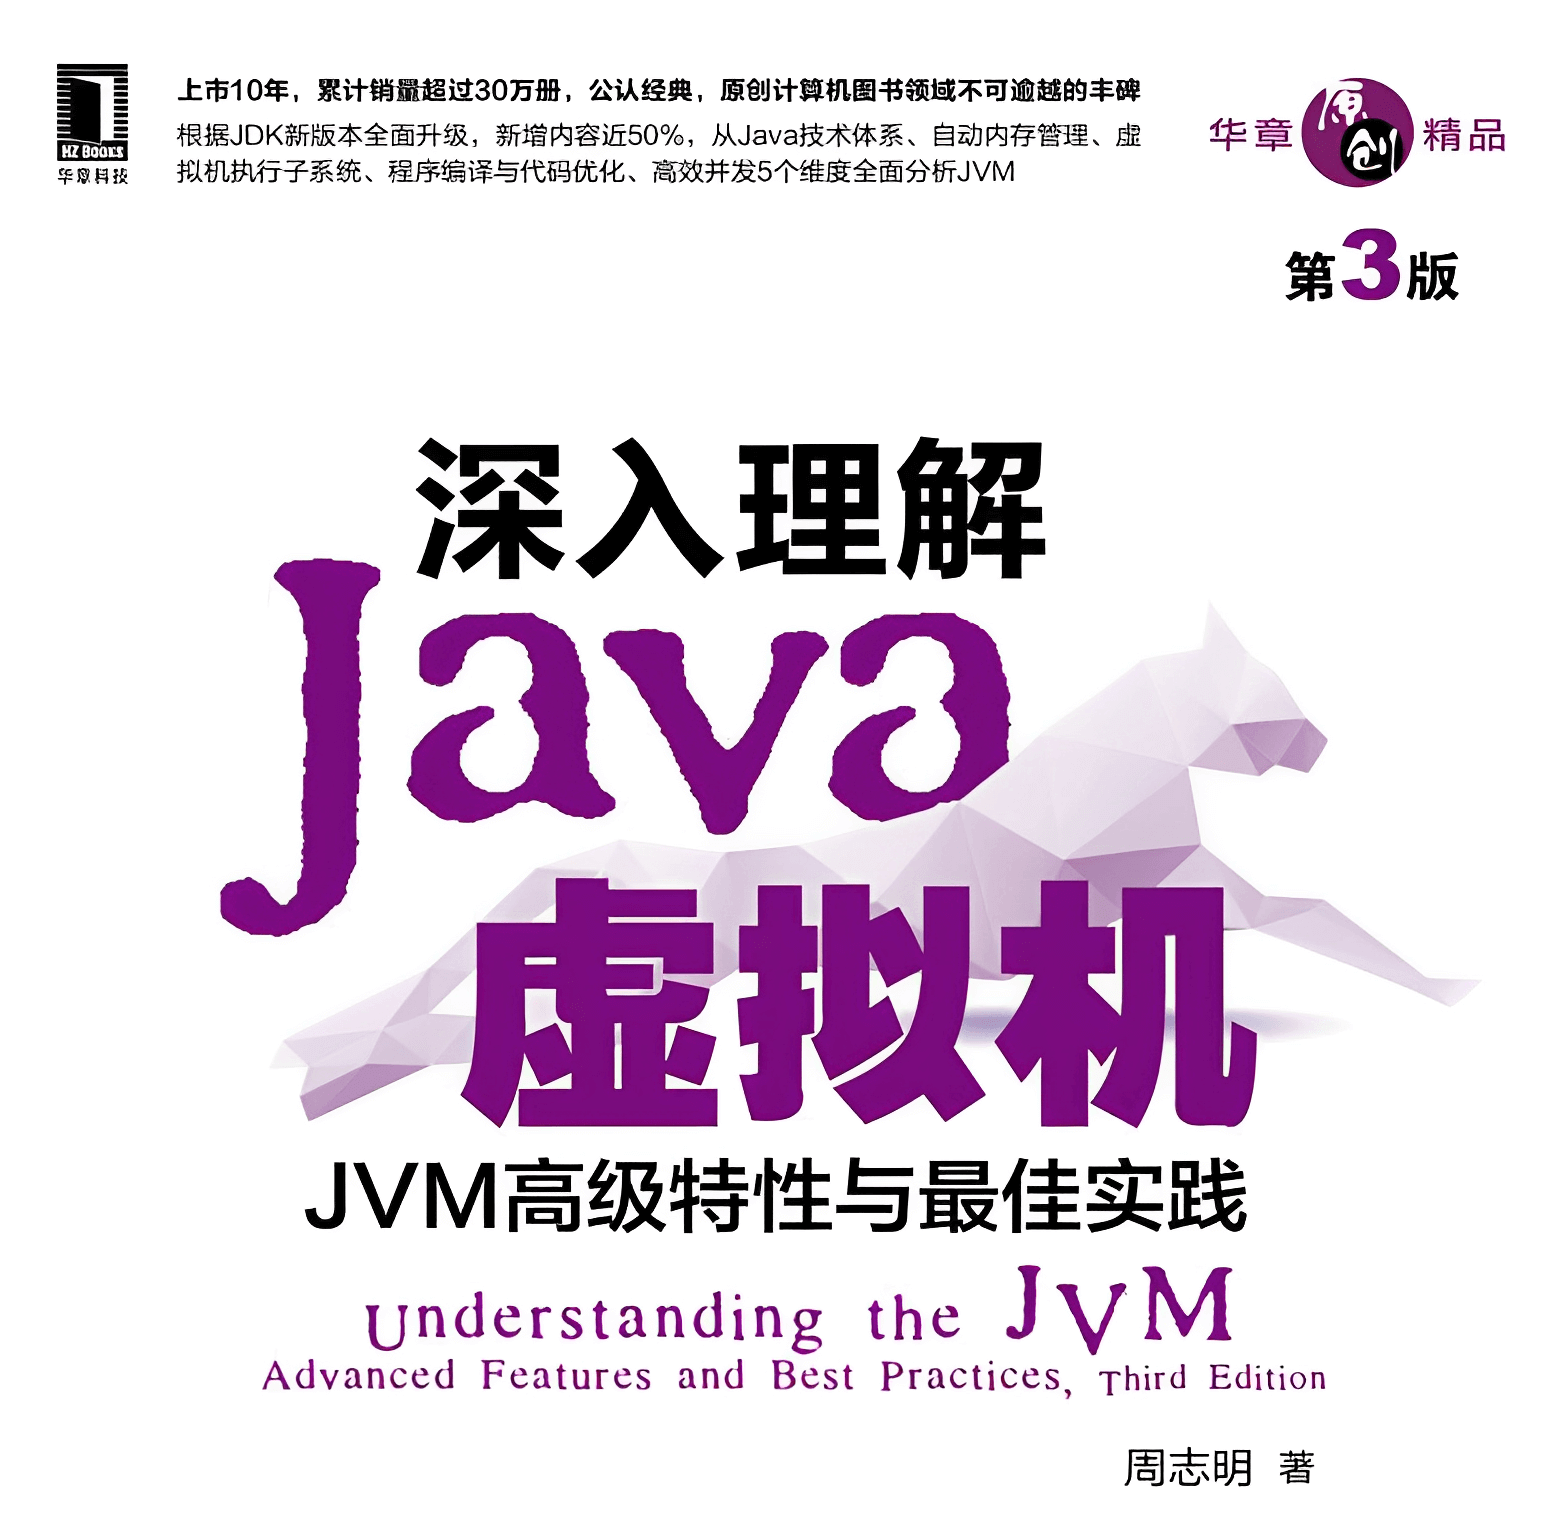 《深入理解Java虚拟机》笔记